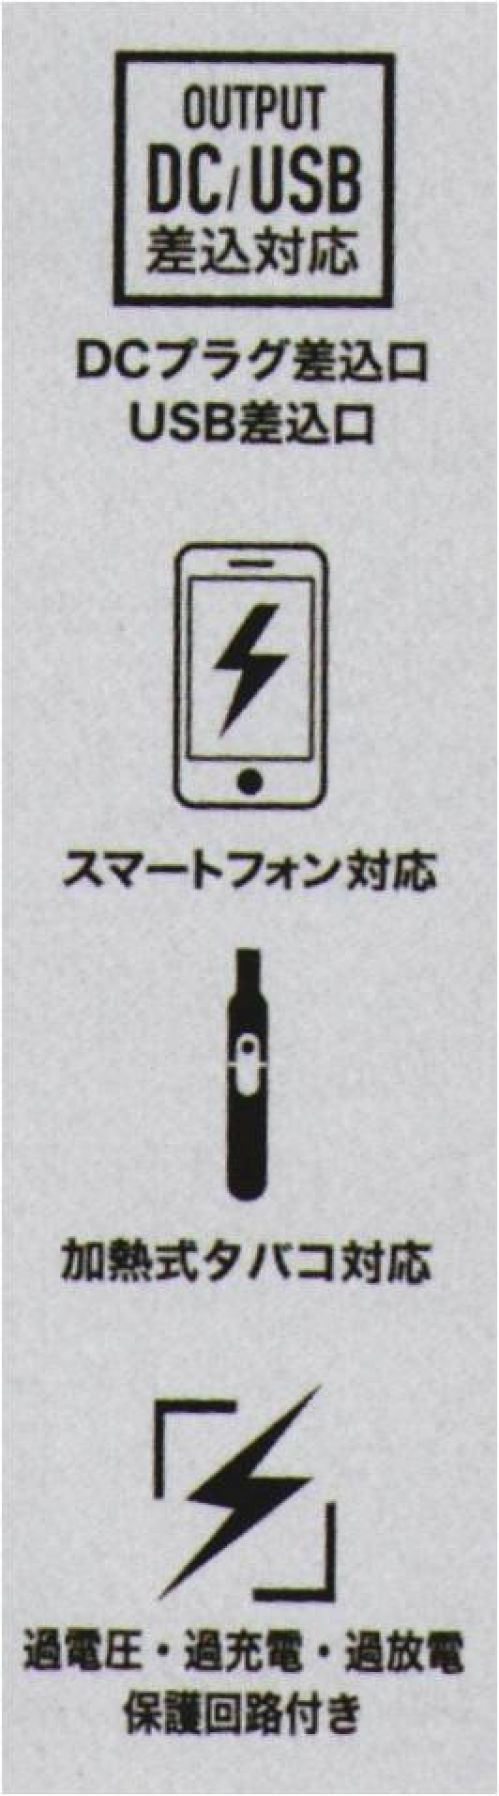 CUC 9953 マルチモバイルバッテリー 6700mAh USB口/DC口を同時搭載プロワーカーが年中使えるマルチモバイルバッテリー「なんとかする」という意味をもつDiVaiZブランドの新タイプモバイルバッテリー【DiVaiZCAVO】（ディバイスカーヴォ）。USB差込タイプで温度切替スイッチのついた電熱ウェア「duraHEAT」への使用、DC差込タイプのEFウェア「WINDZONE」への使用が可能。条件が揃えばUSB口の端末などへの充電も可能。過充電・過放電の保護回路付き。●電熱ウェア対応、EFウェア対応●iPhone/Androidスマートホン対応※1●IQOS/glo加熱式タバコ対応※1●SAFETY 過充電/過放電保護回路付●AIR-PLANE 飛行機内持ち込みOK※2●DCプラグ差込口 USB差込口●PSE認証済み●軽量、小型、大容量※充電用ACアダプタ―、microUSBケーブル 別売り※発売ロットにより「6400mAh」と混在する場合がございます。詳しくはお問合せください。※使用前に必ず本取扱説明書をよくお読みになり、正しく安全にご使用ください。取扱説明書は大切に保管し、いつでも参照できるようにしてください。※USB/DCでの同時差込みは使用できません。※1. USB端末で充電するスマートホン（入力電力5V/2A以下）、加熱式タバコ（入力電力5V/2A以下）については、基本的に充電可能ですが、対応する機種の使用であってもすべての状況で動作を保証するものではありません。※2. 空港会社の規定によっては例外がある場合がございます。予めご了承ください。※この商品はご注文後のキャンセル、返品及び交換は出来ませんのでご注意下さい。※なお、この商品のお支払方法は、先振込(代金引換以外)にて承り、ご入金確認後の手配となります。 サイズ／スペック